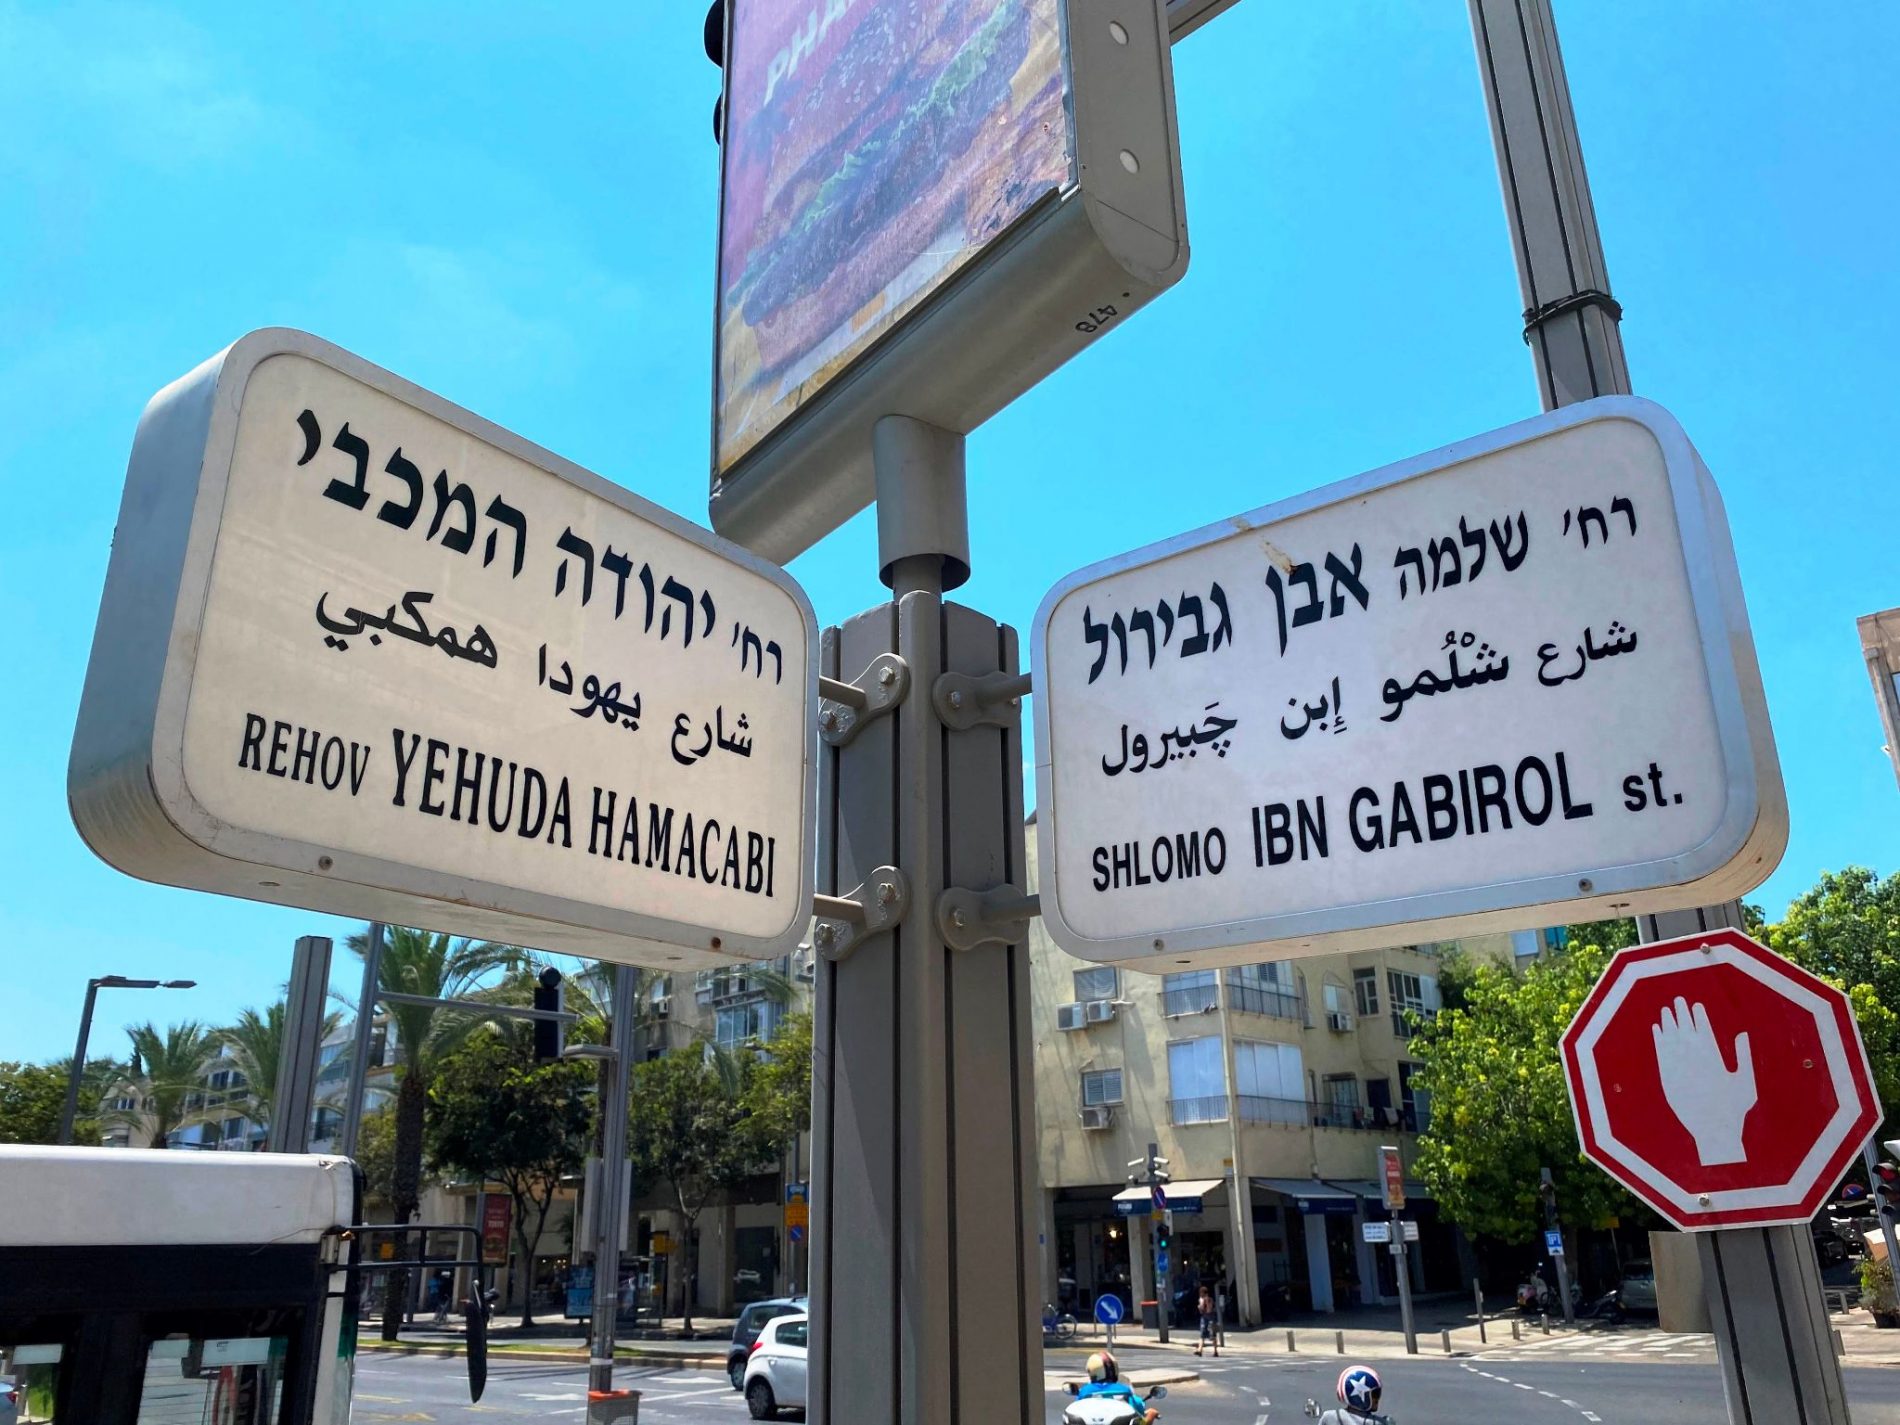 הנצחת שמות נשים במרחב הציבורי (בתל אביב)